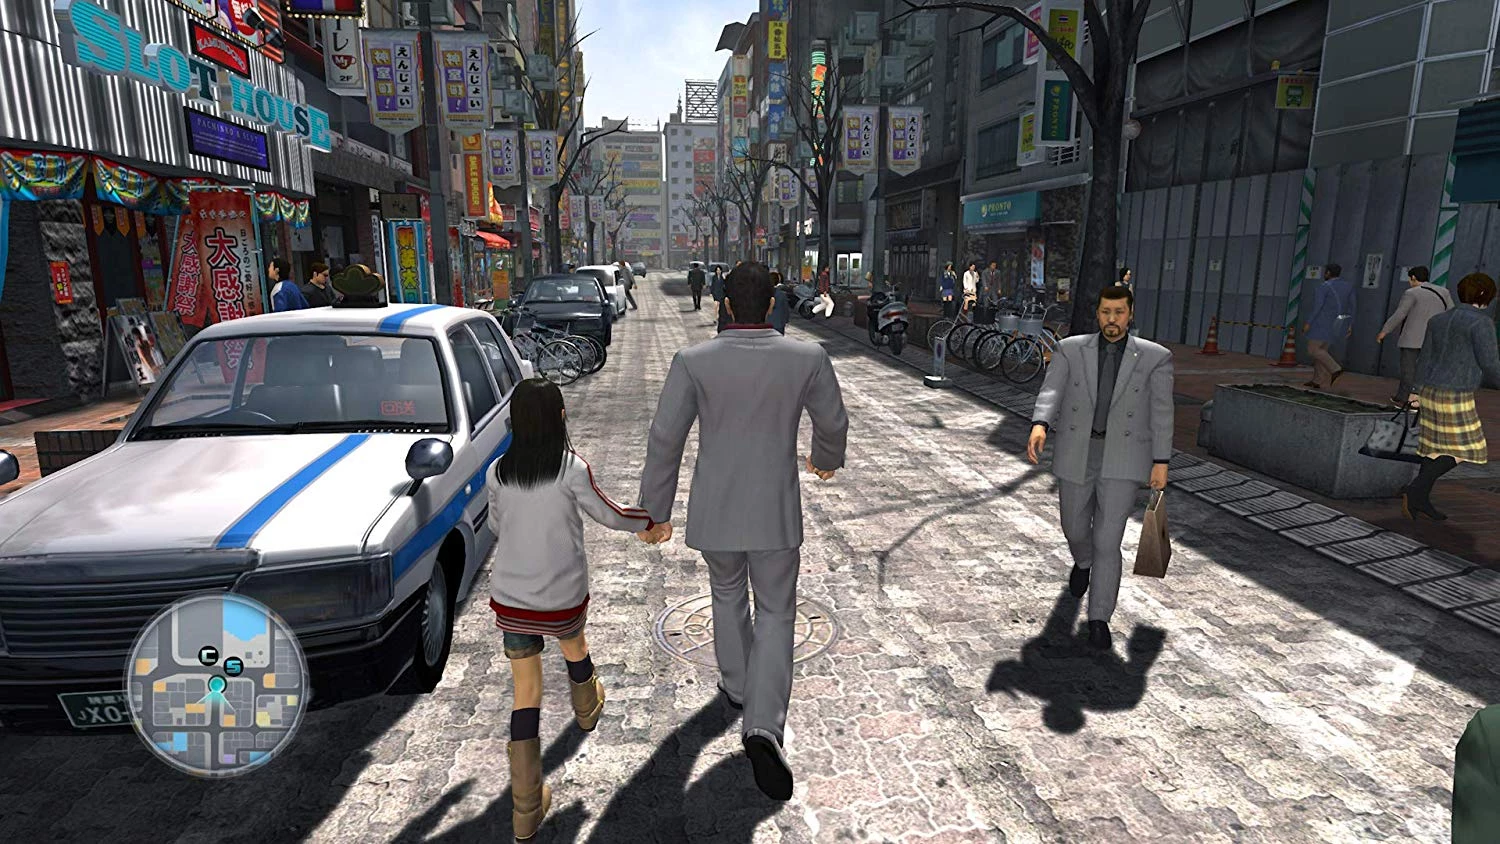 Yakuza Remastered Collection voor de PlayStation 4 kopen op nedgame.nl